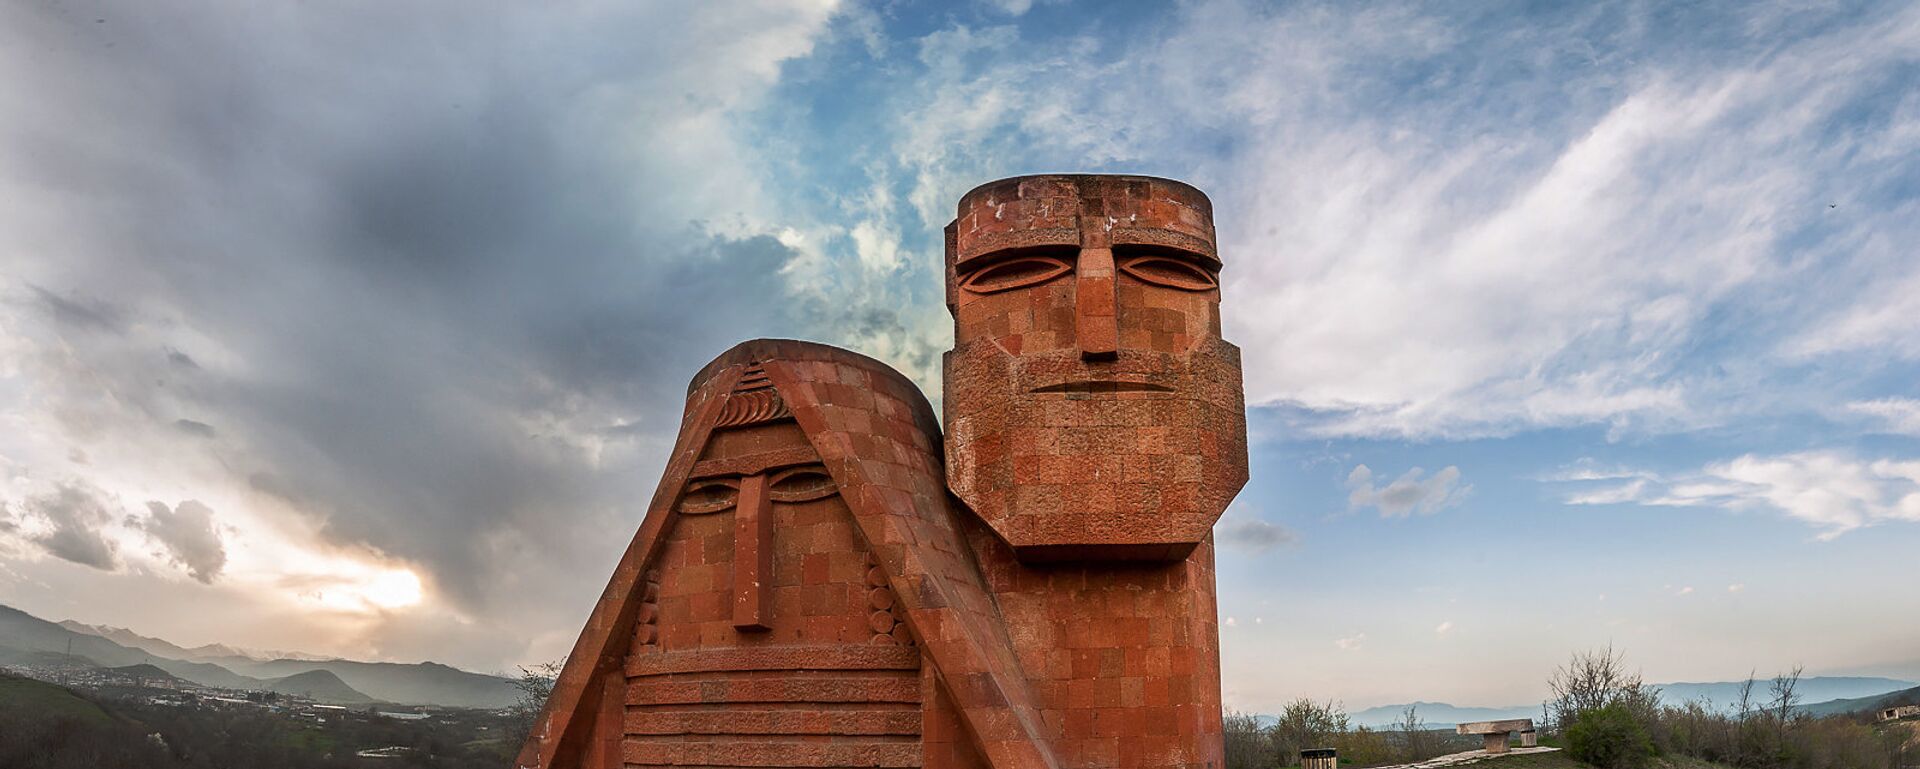 Памятник Мы-наши горы. Степанакерт. НКР - Sputnik Армения, 1920, 24.05.2021